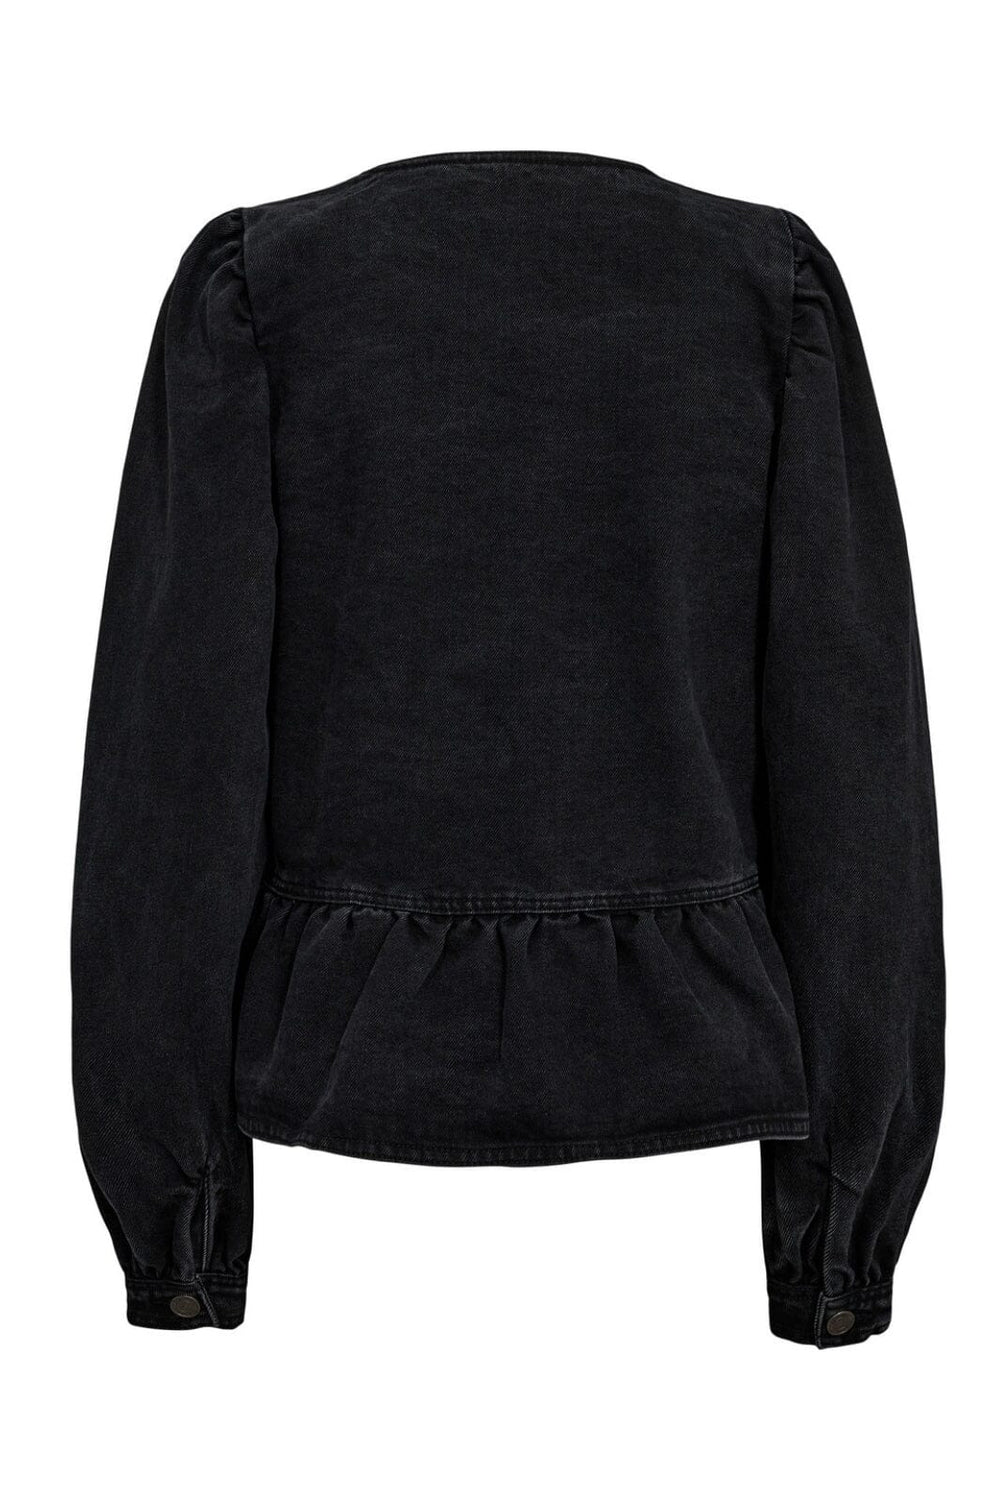 Sofie Schnoor - S234250 Shirt - Washed Black Skjorter 